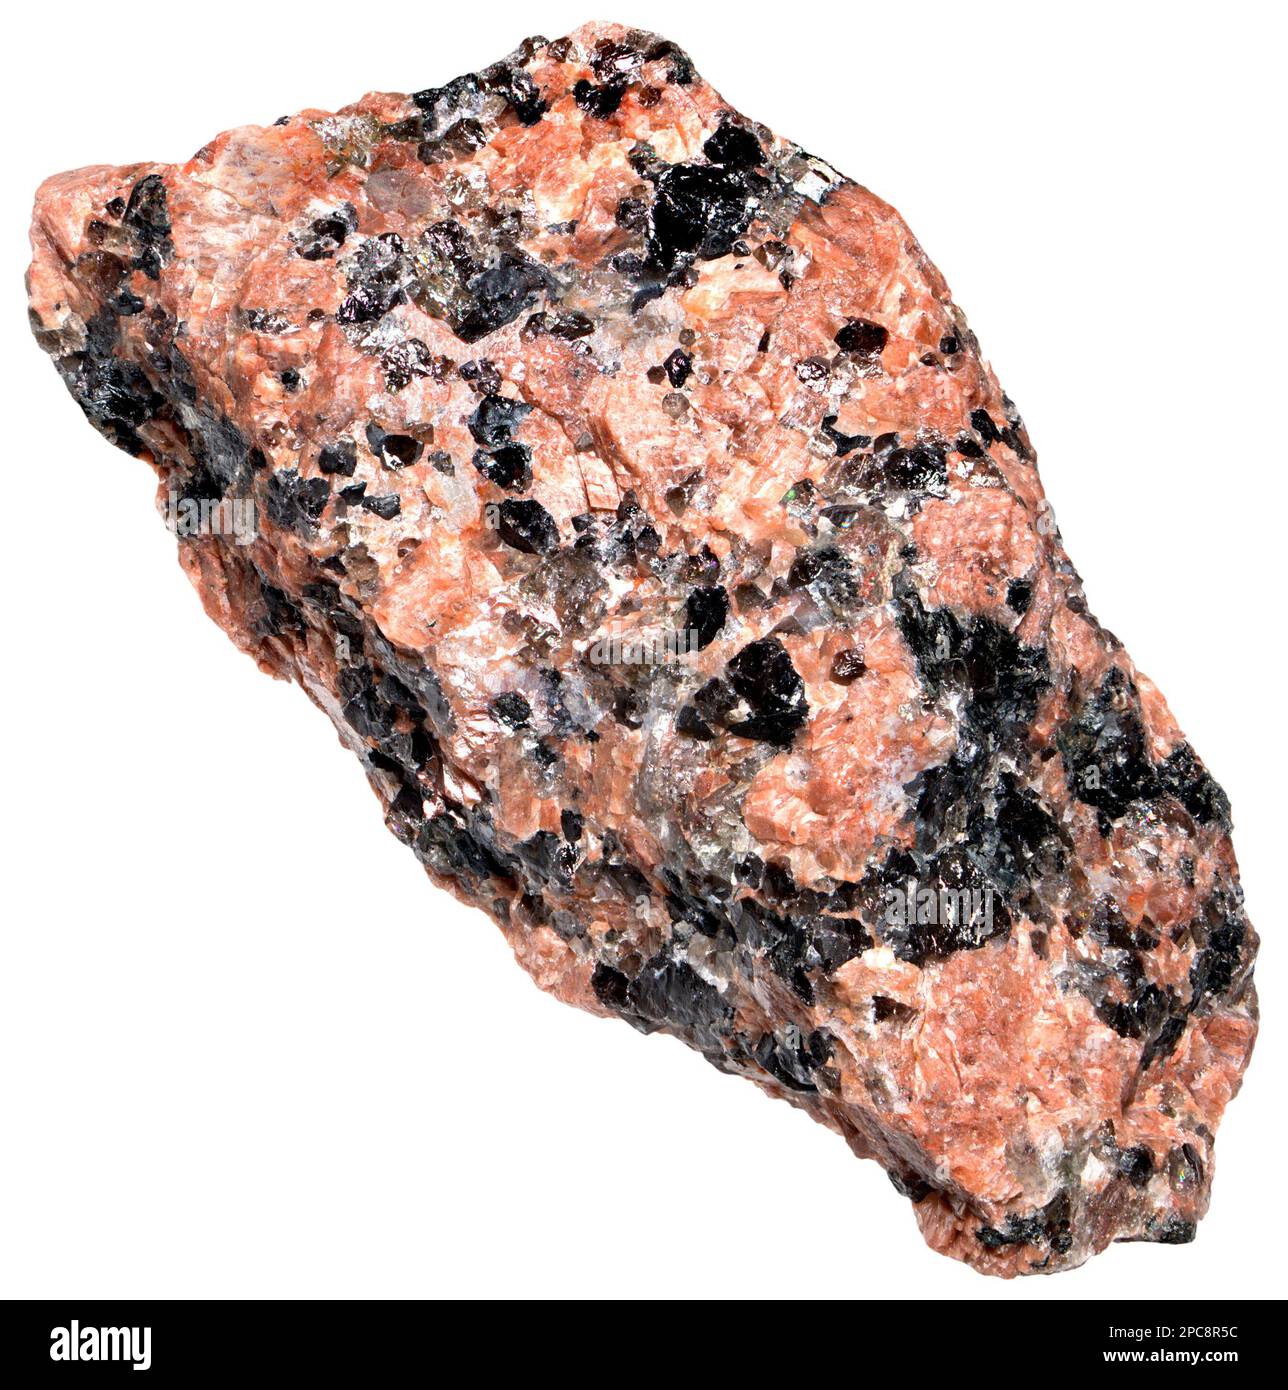 Granodiorit (Norwegen), phaneritisch strukturiertes, intrusives, igneöses Gestein ähnlich wie Granit, enthält jedoch mehr Plagioclase-Feldspat als Orthoclase-Feldspat Stockfoto